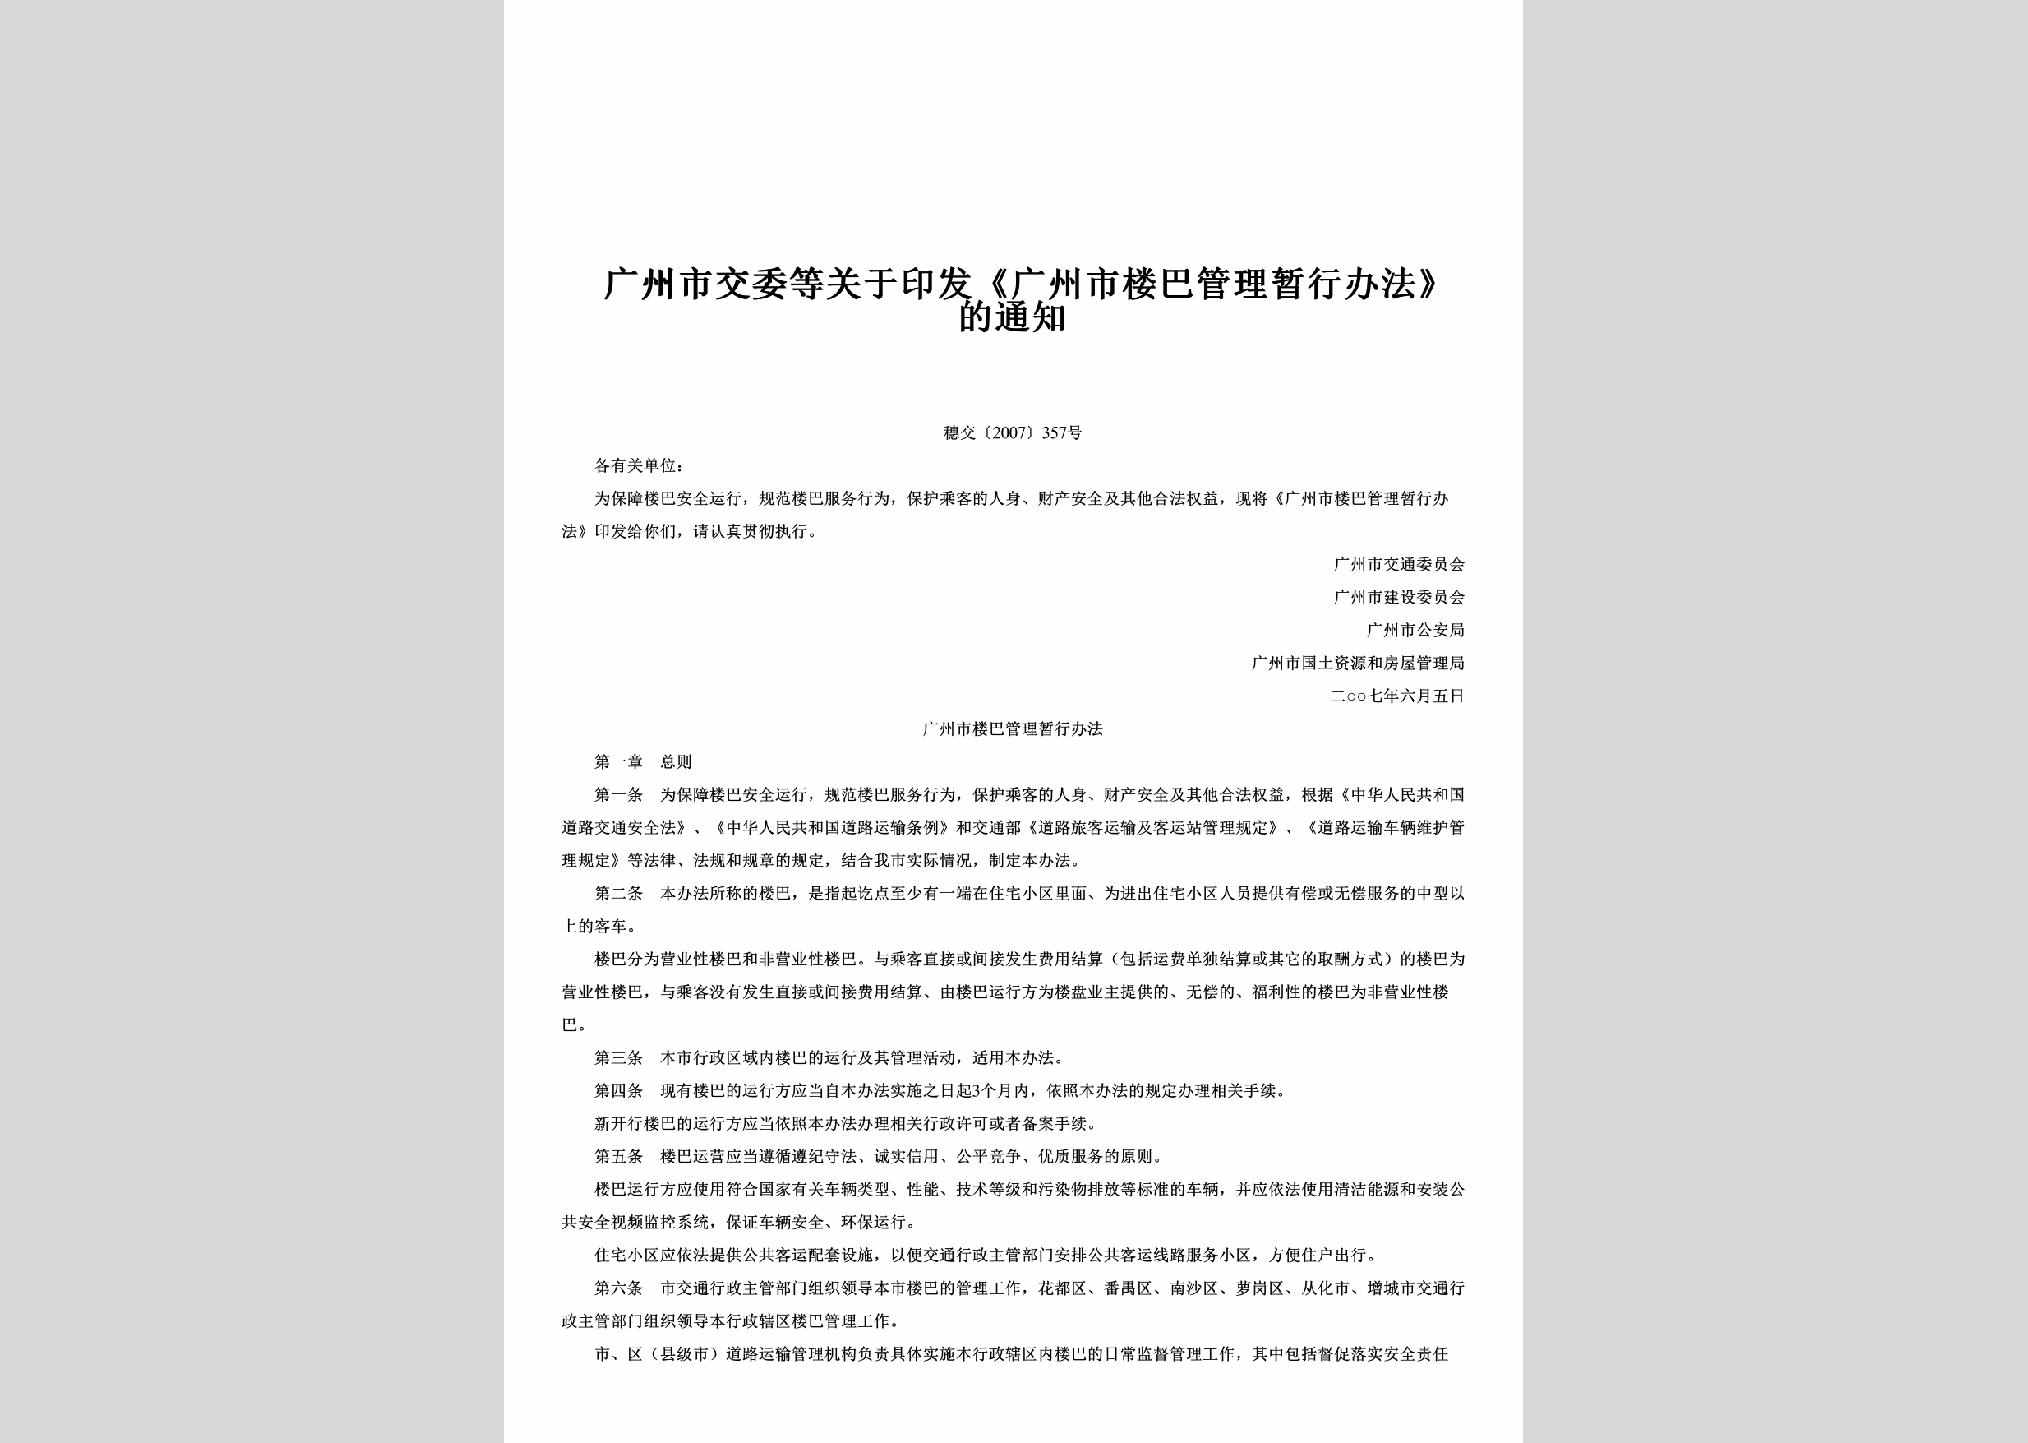 穗交[2007]357号：关于印发《广州市楼巴管理暂行办法》的通知